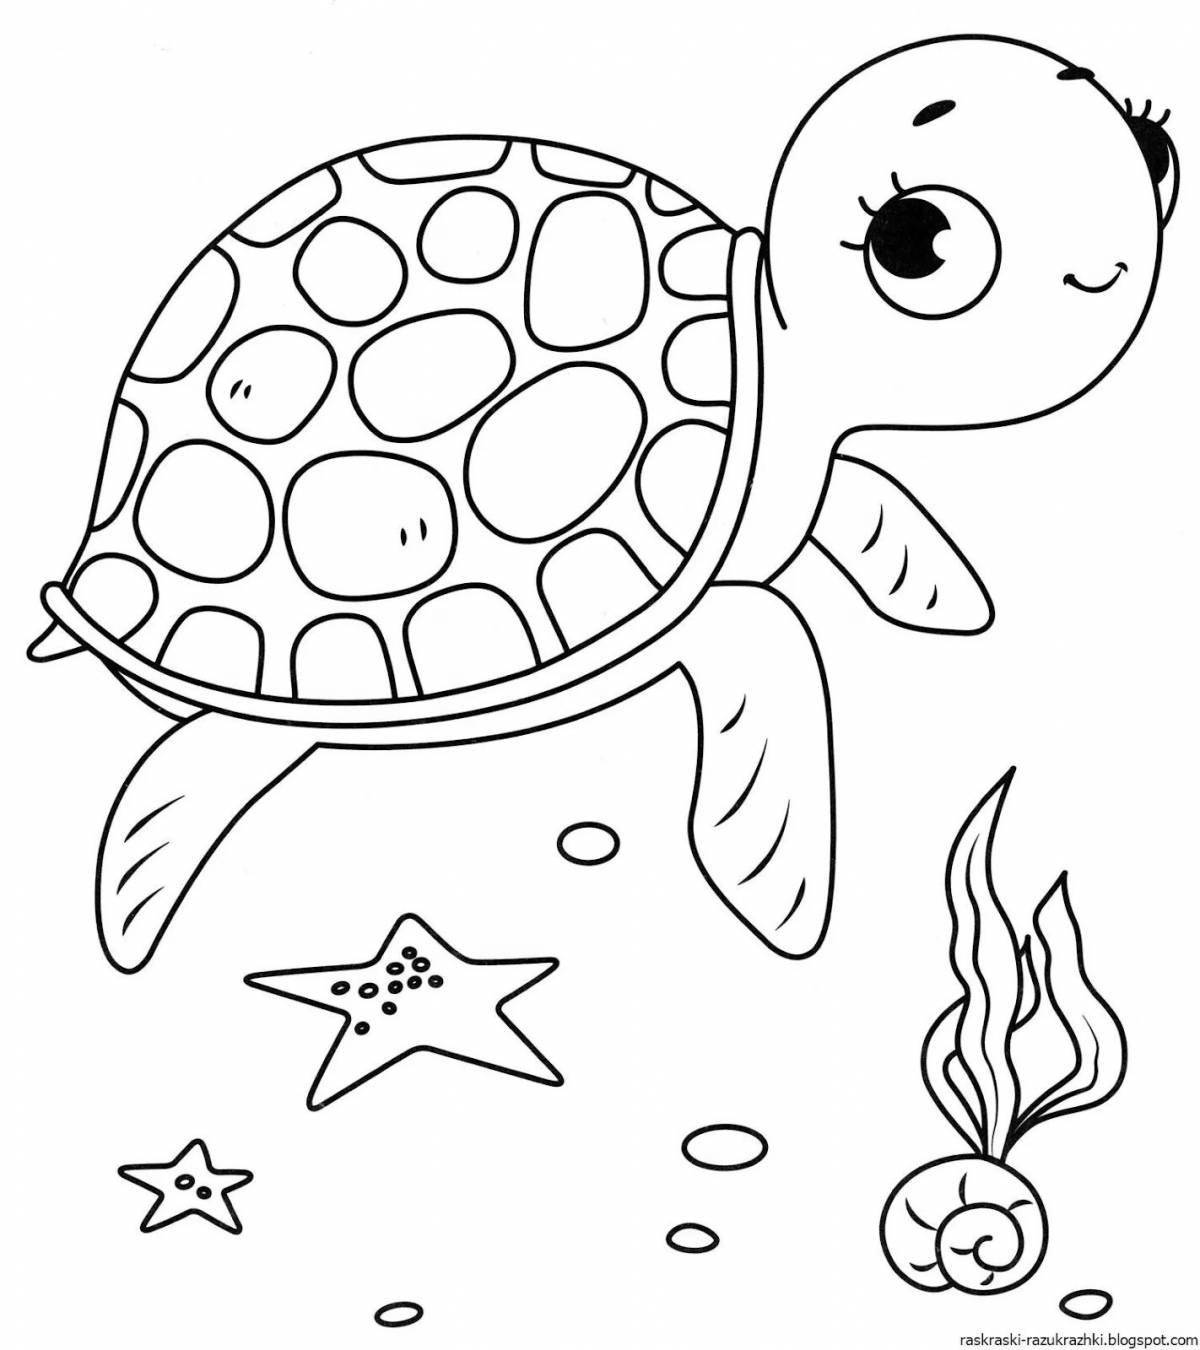 Цветная морская черепаха раскраски для детей